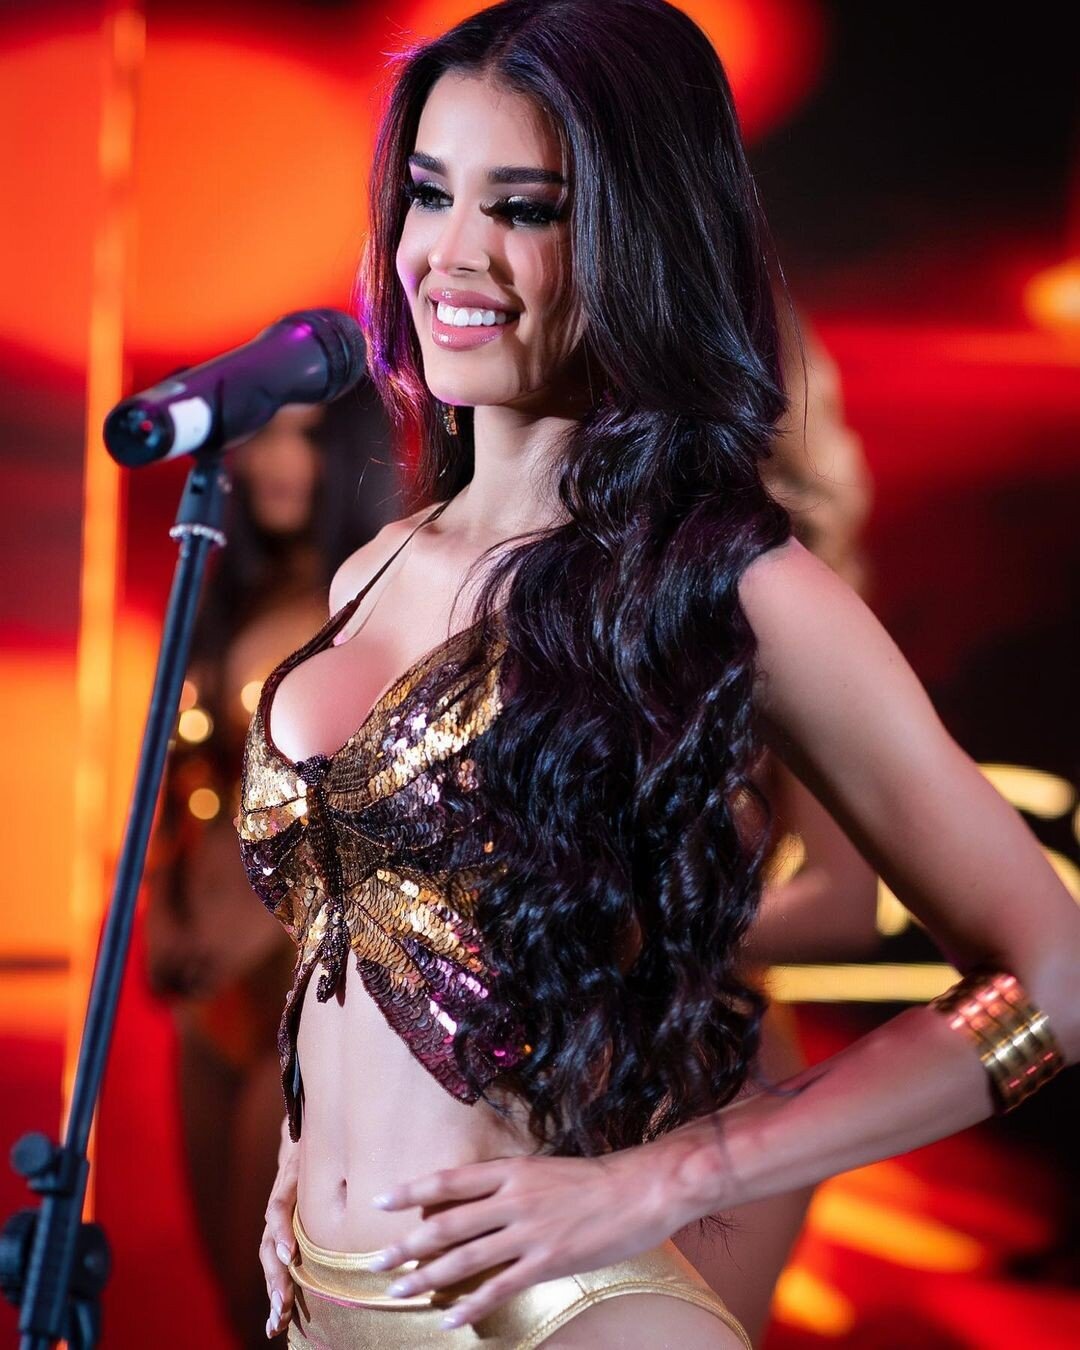 Nhan sắc gây tiếc nuối của người đẹp giành ngôi Á hậu Venezuela